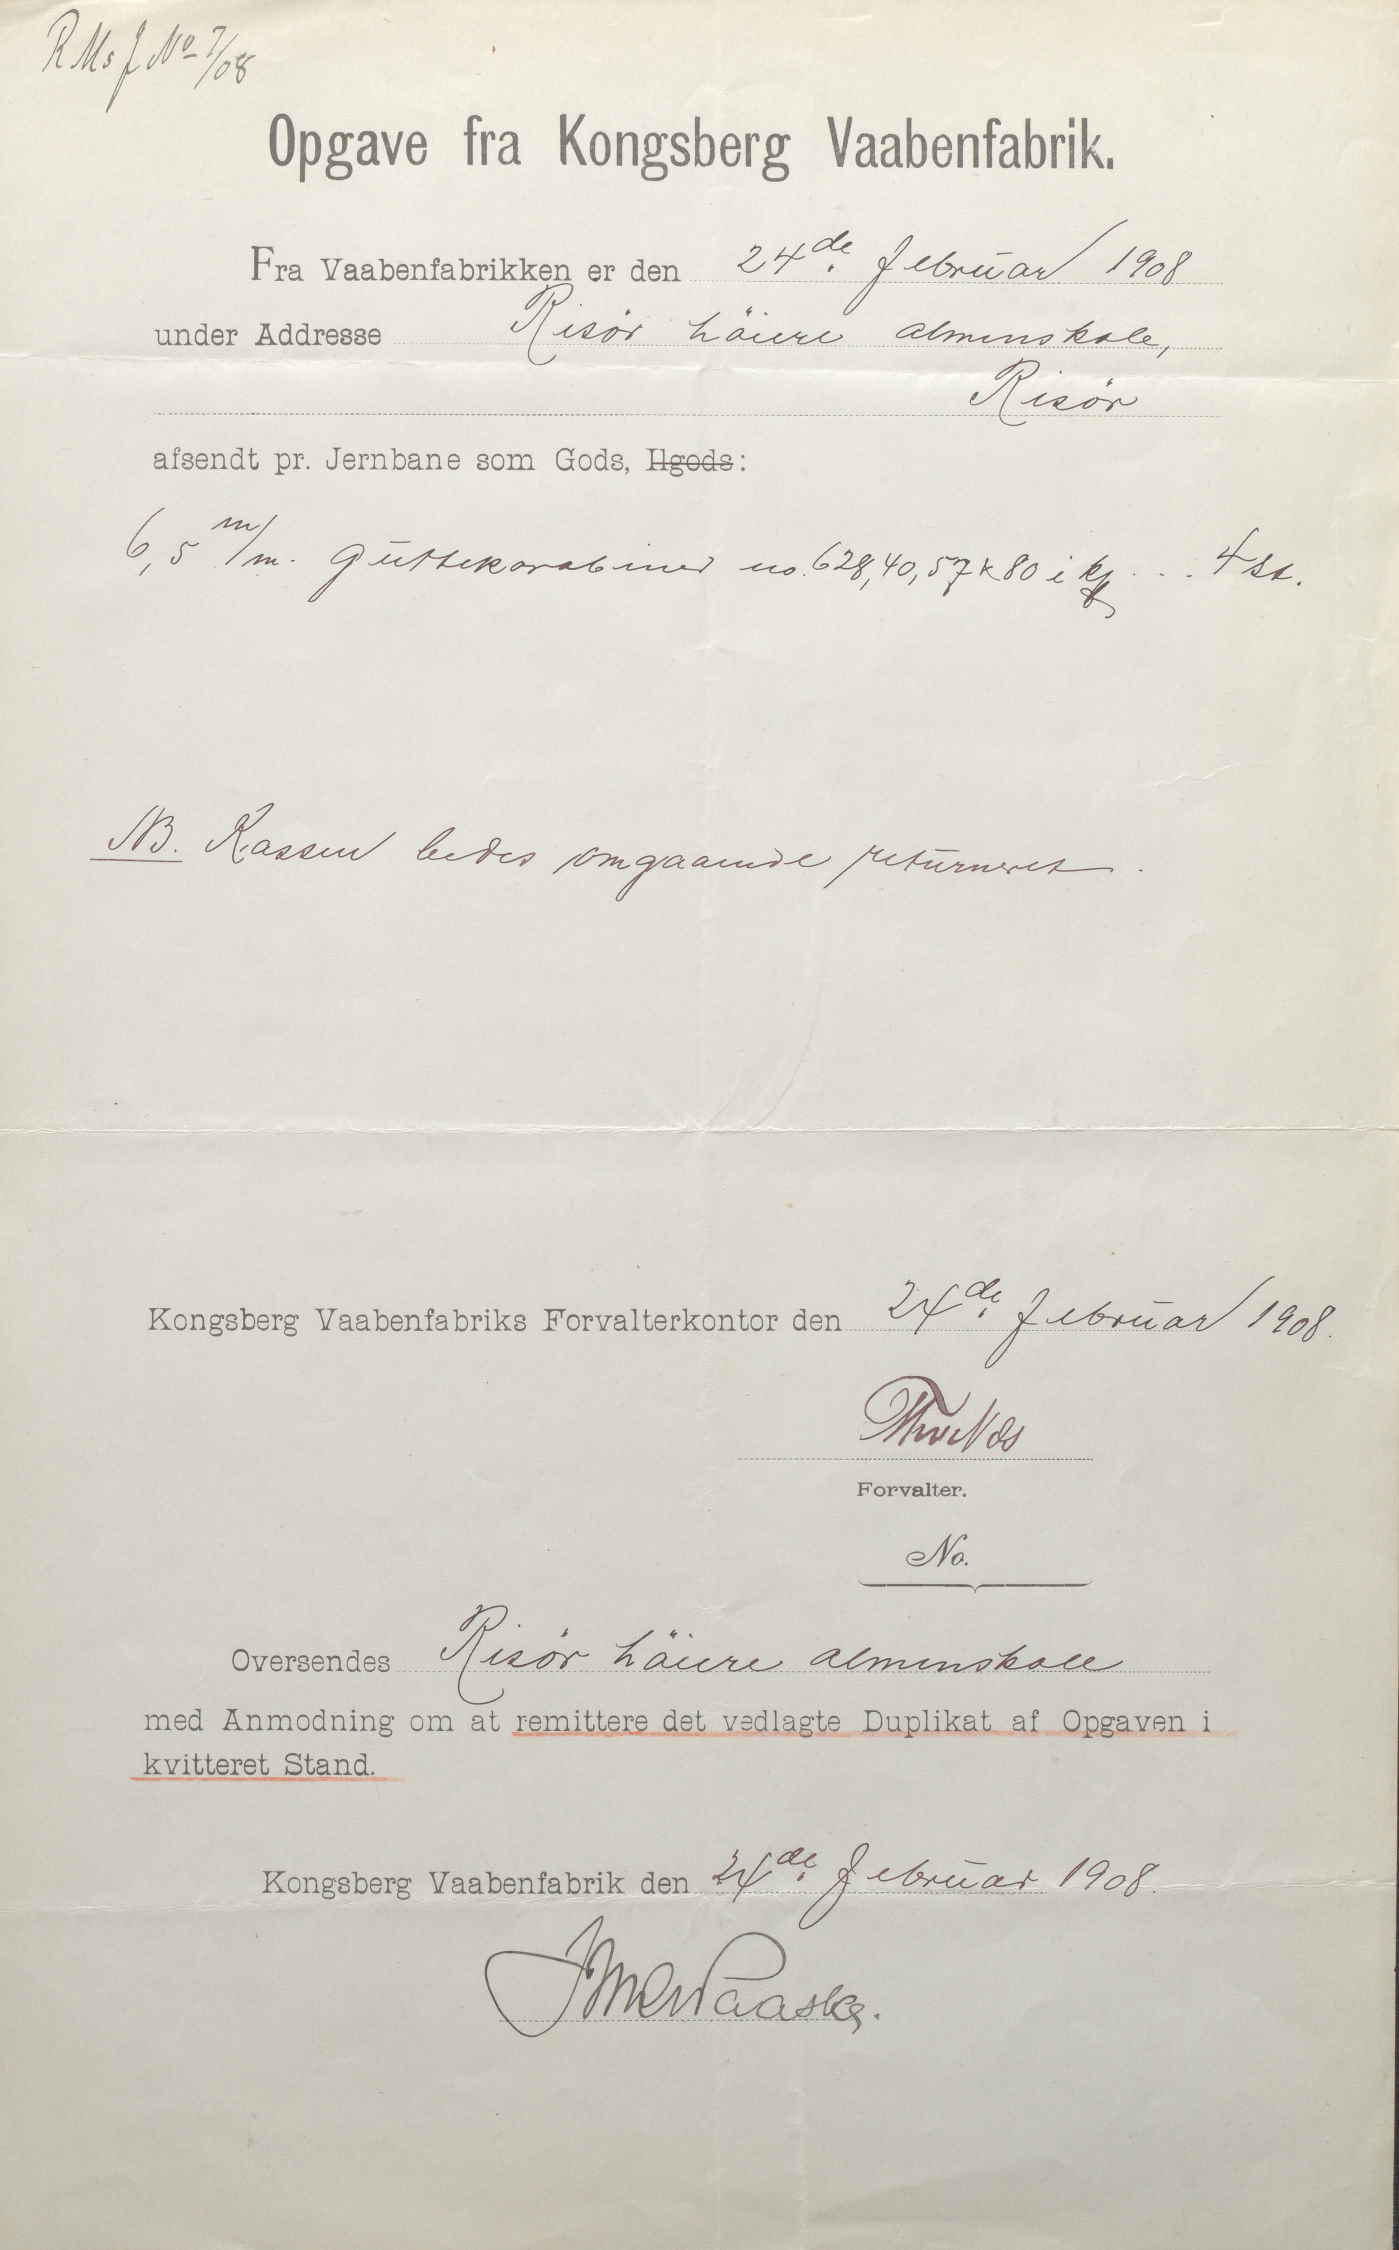 Opgave fra Kongsberg Vaabenfabrik 24.02.1908